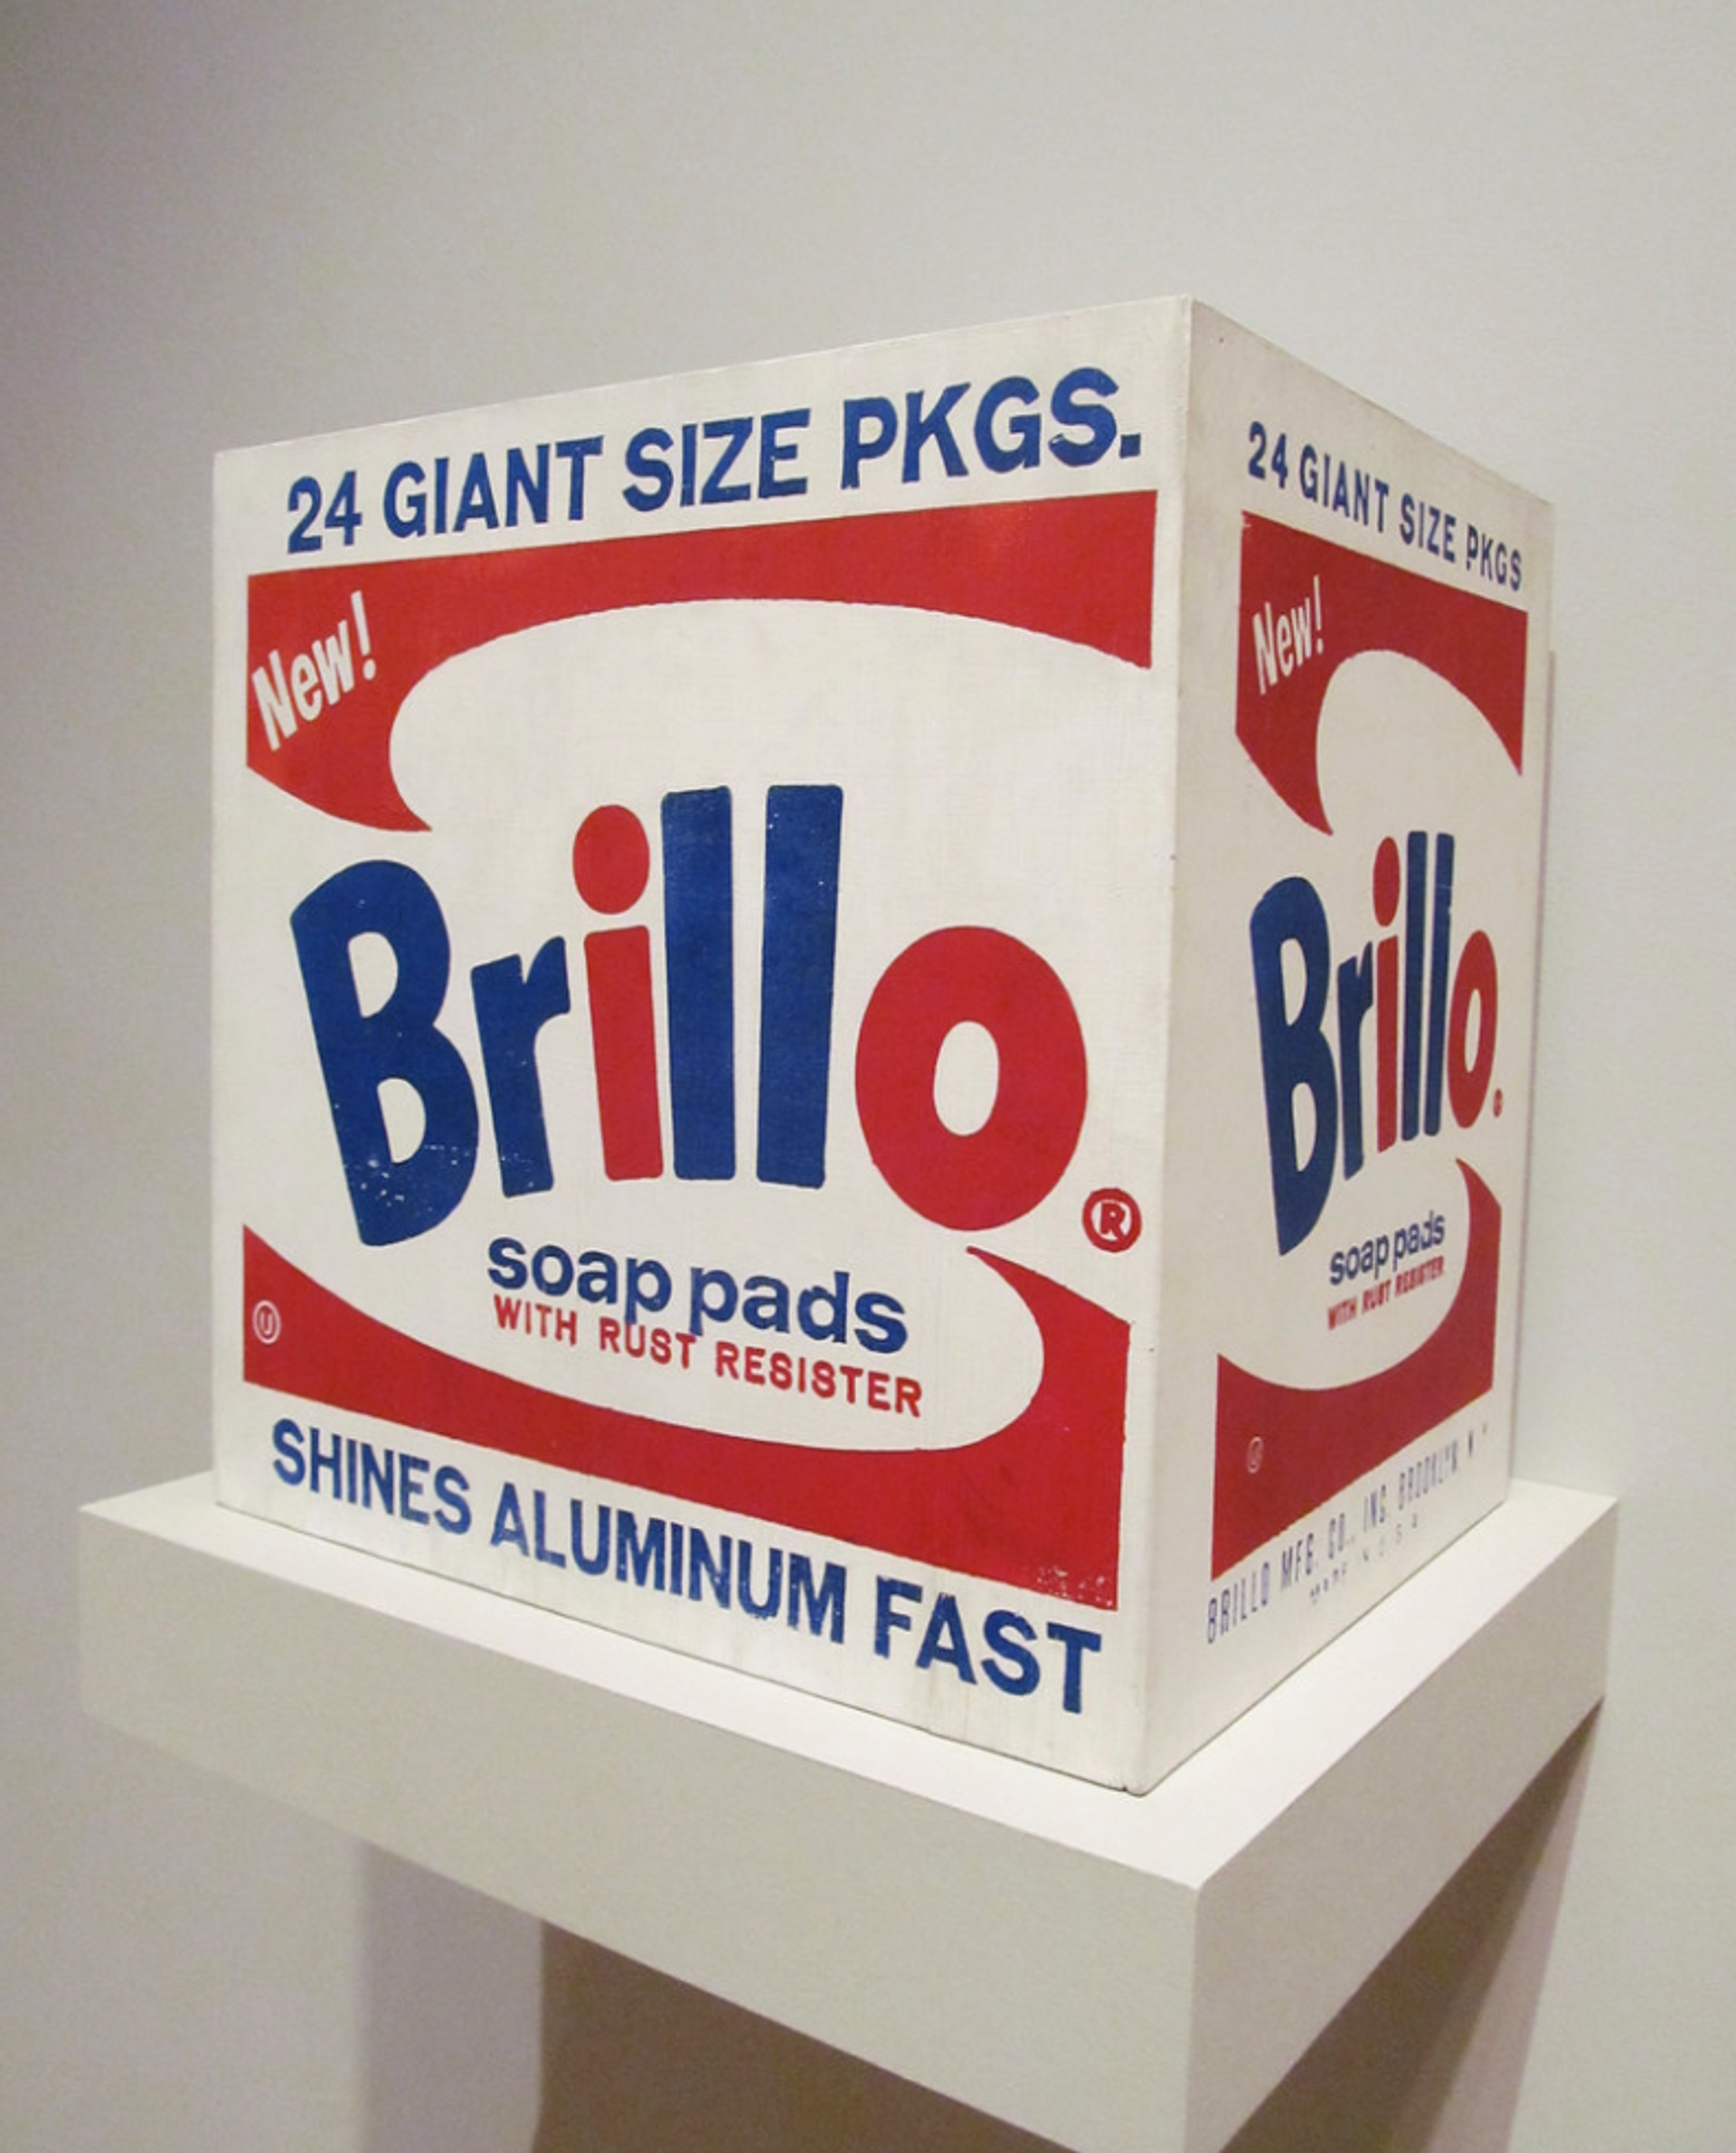 Brillo Box by Andy Warhol - MyArtBroker